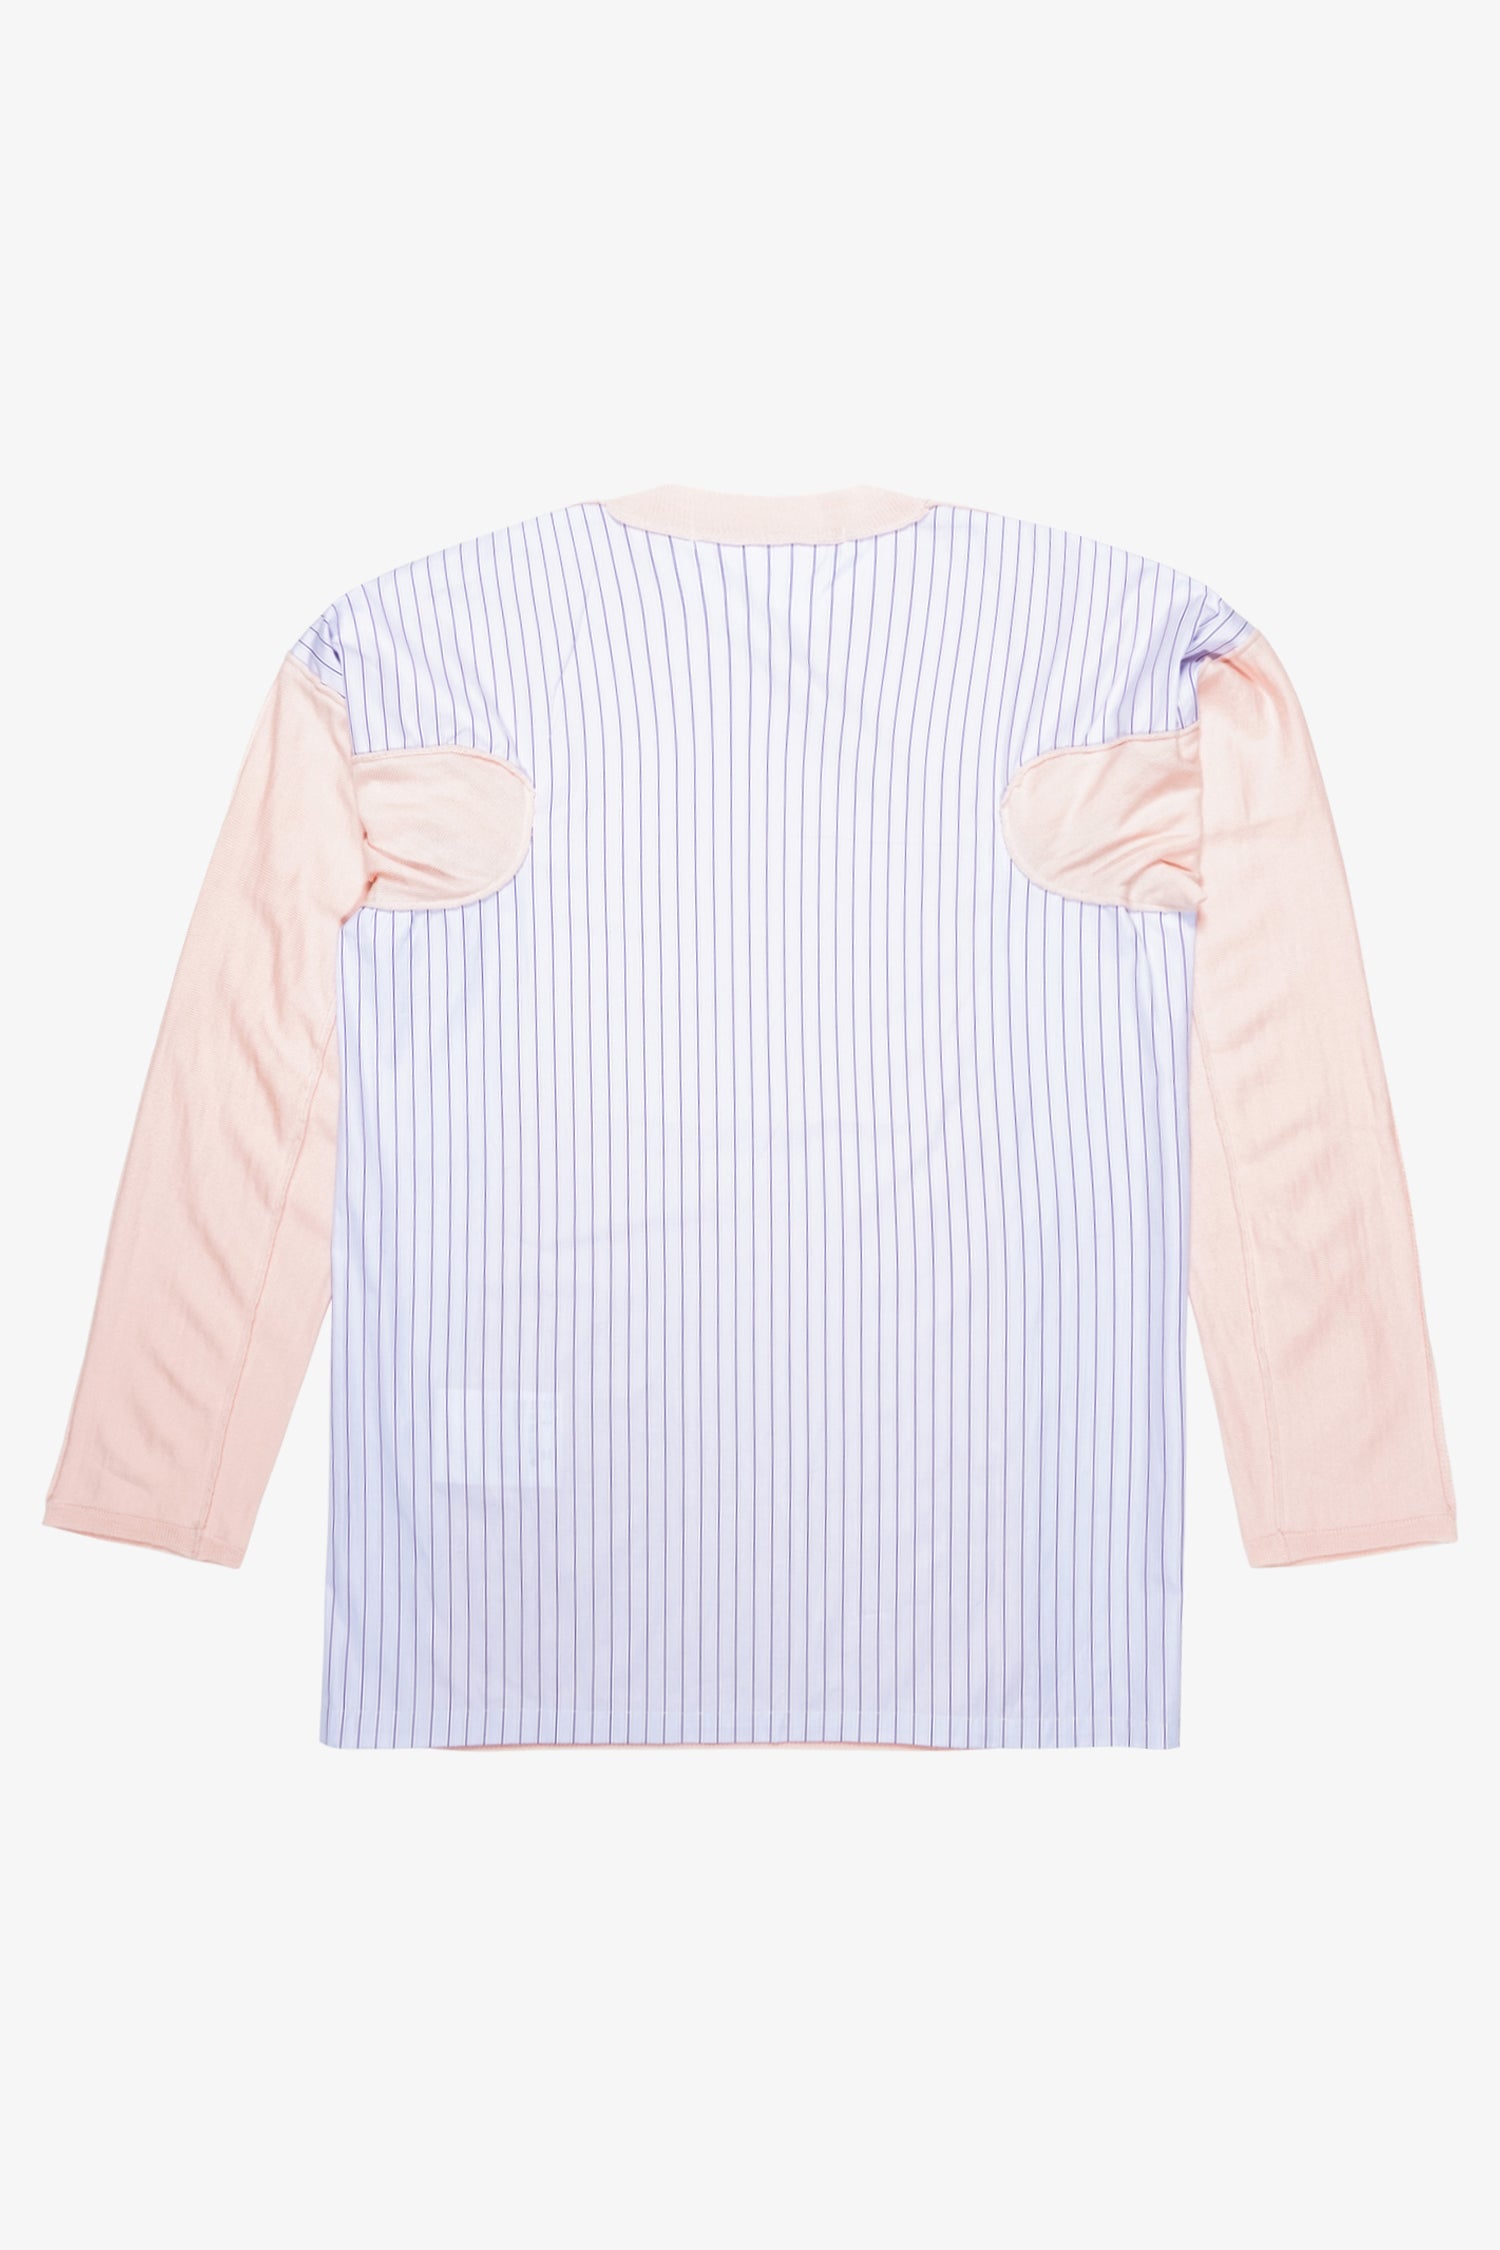 Selectshop FRAME - COMME DES GARÇONS SHIRT Deconstructed Pullover Sweatshirt Dubai